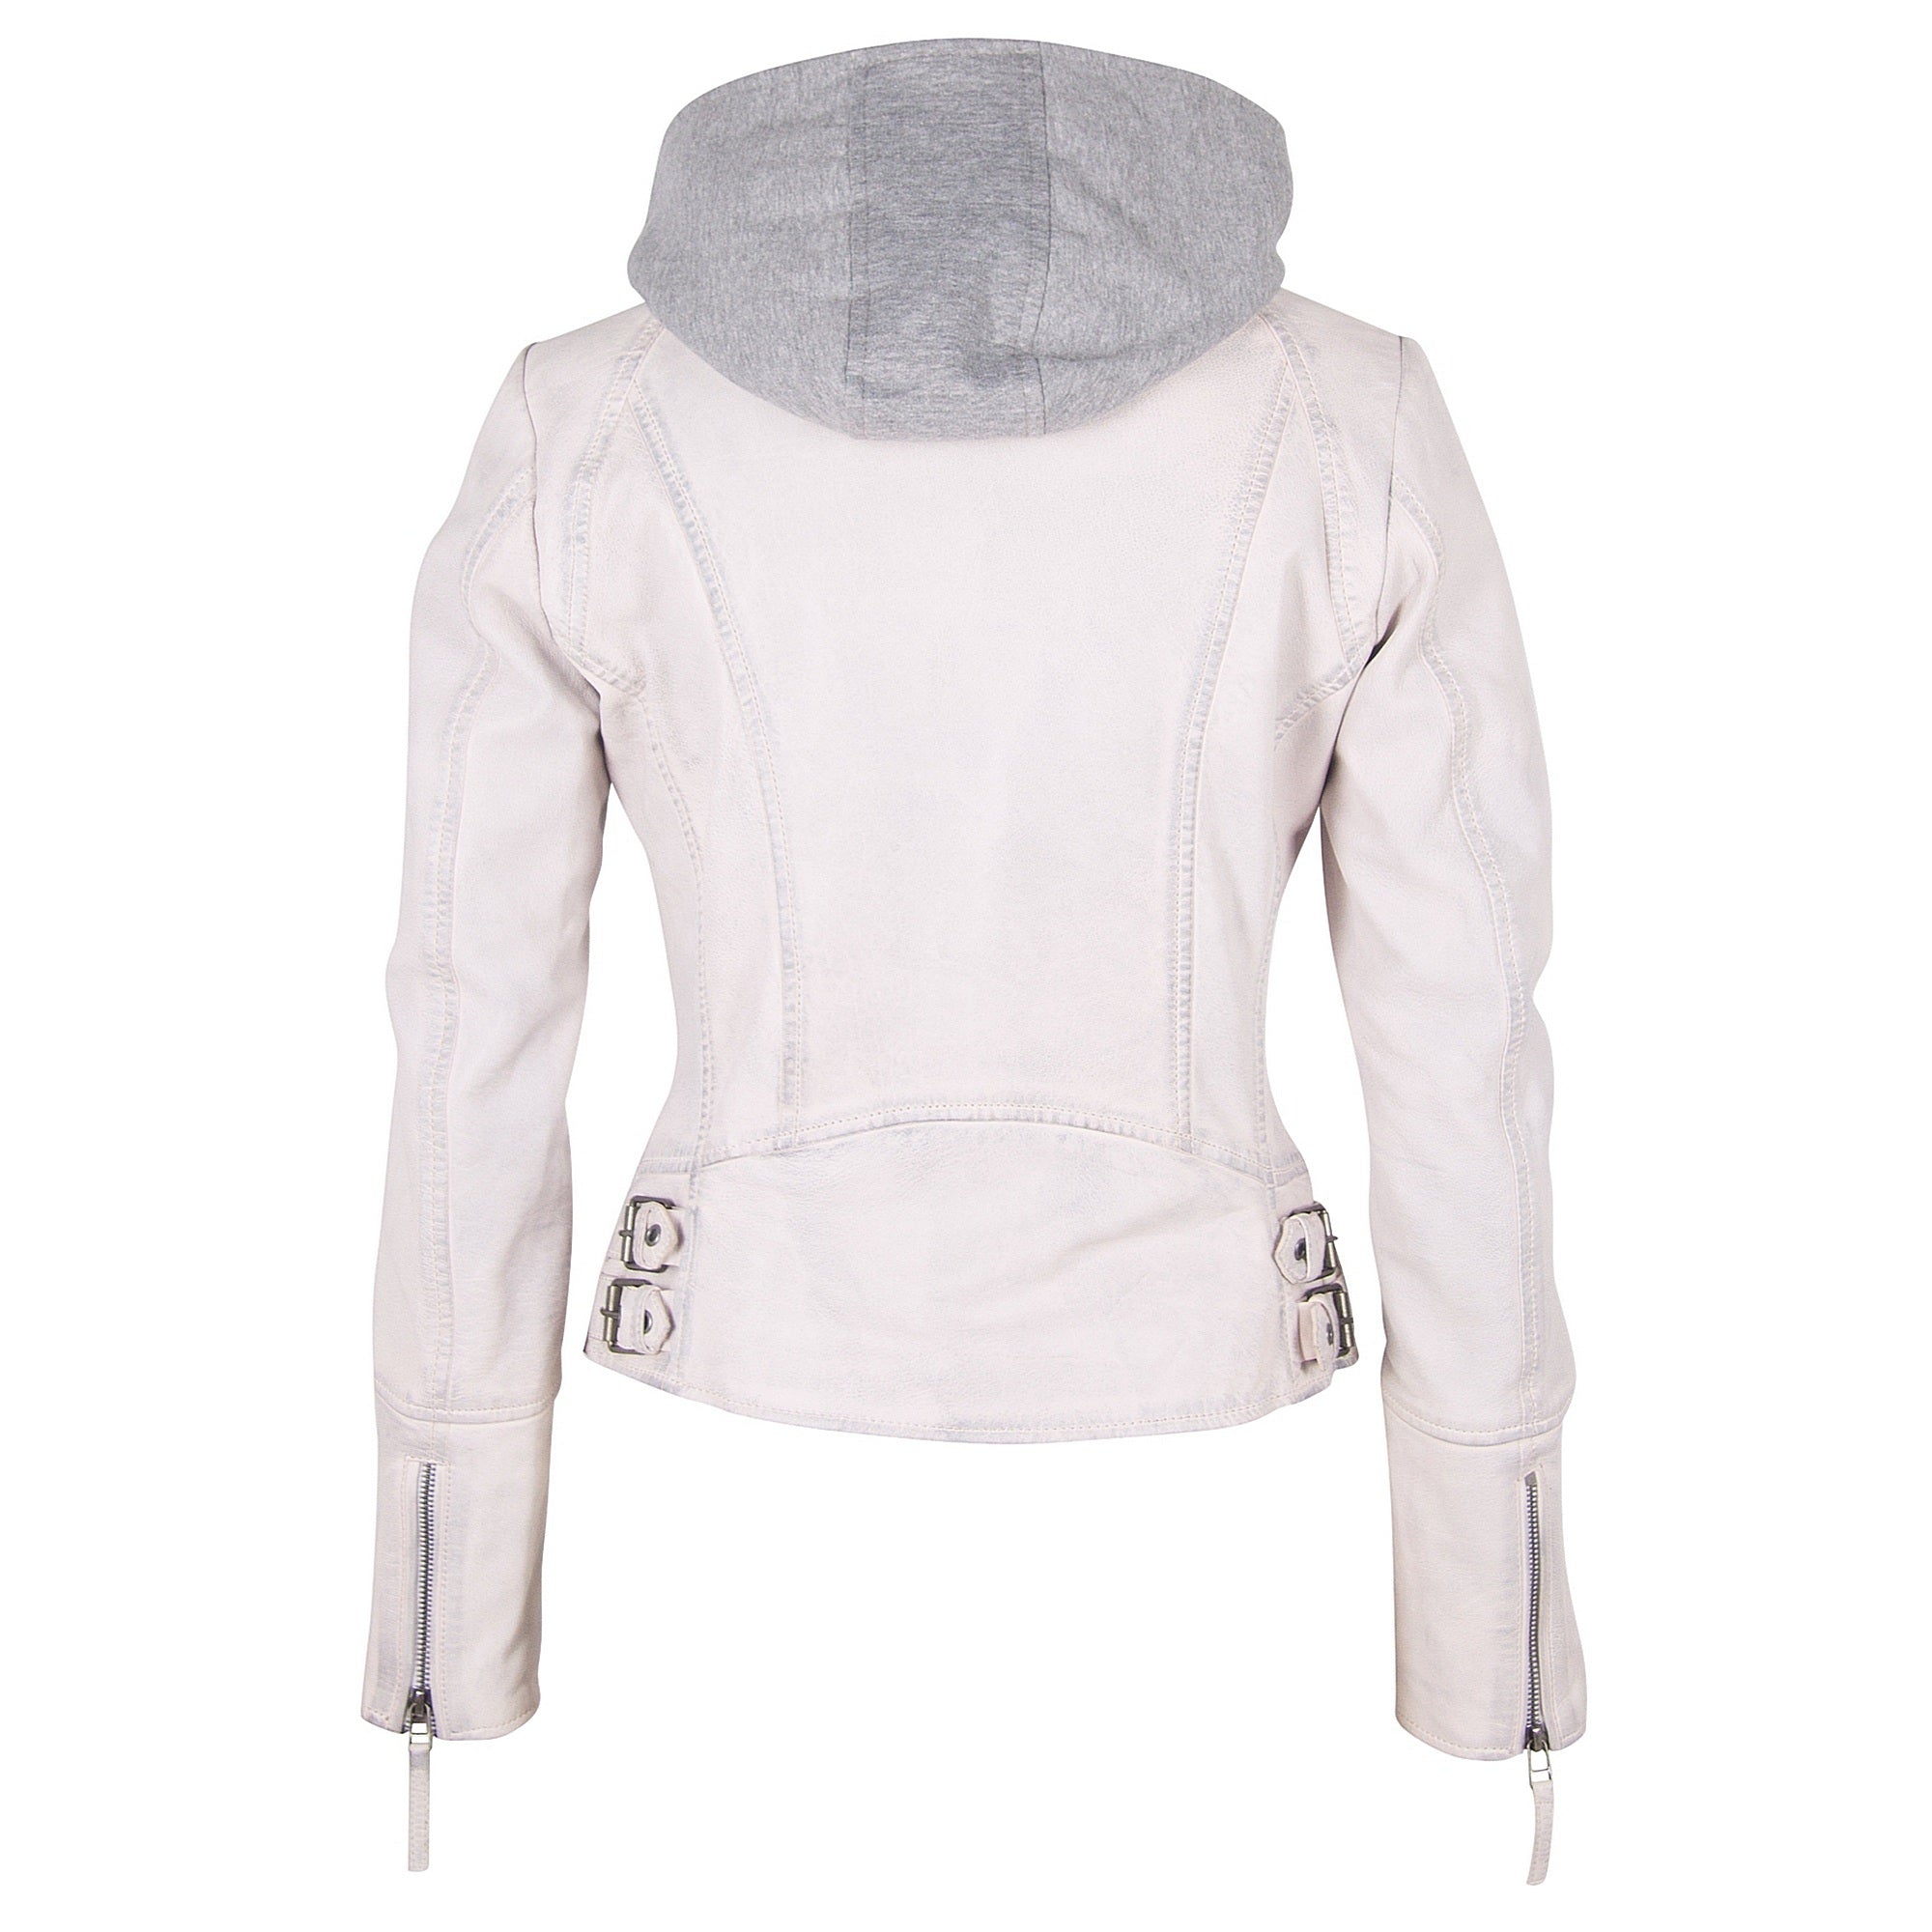 Nola RF Leather White mauritiusleather Jacket, –